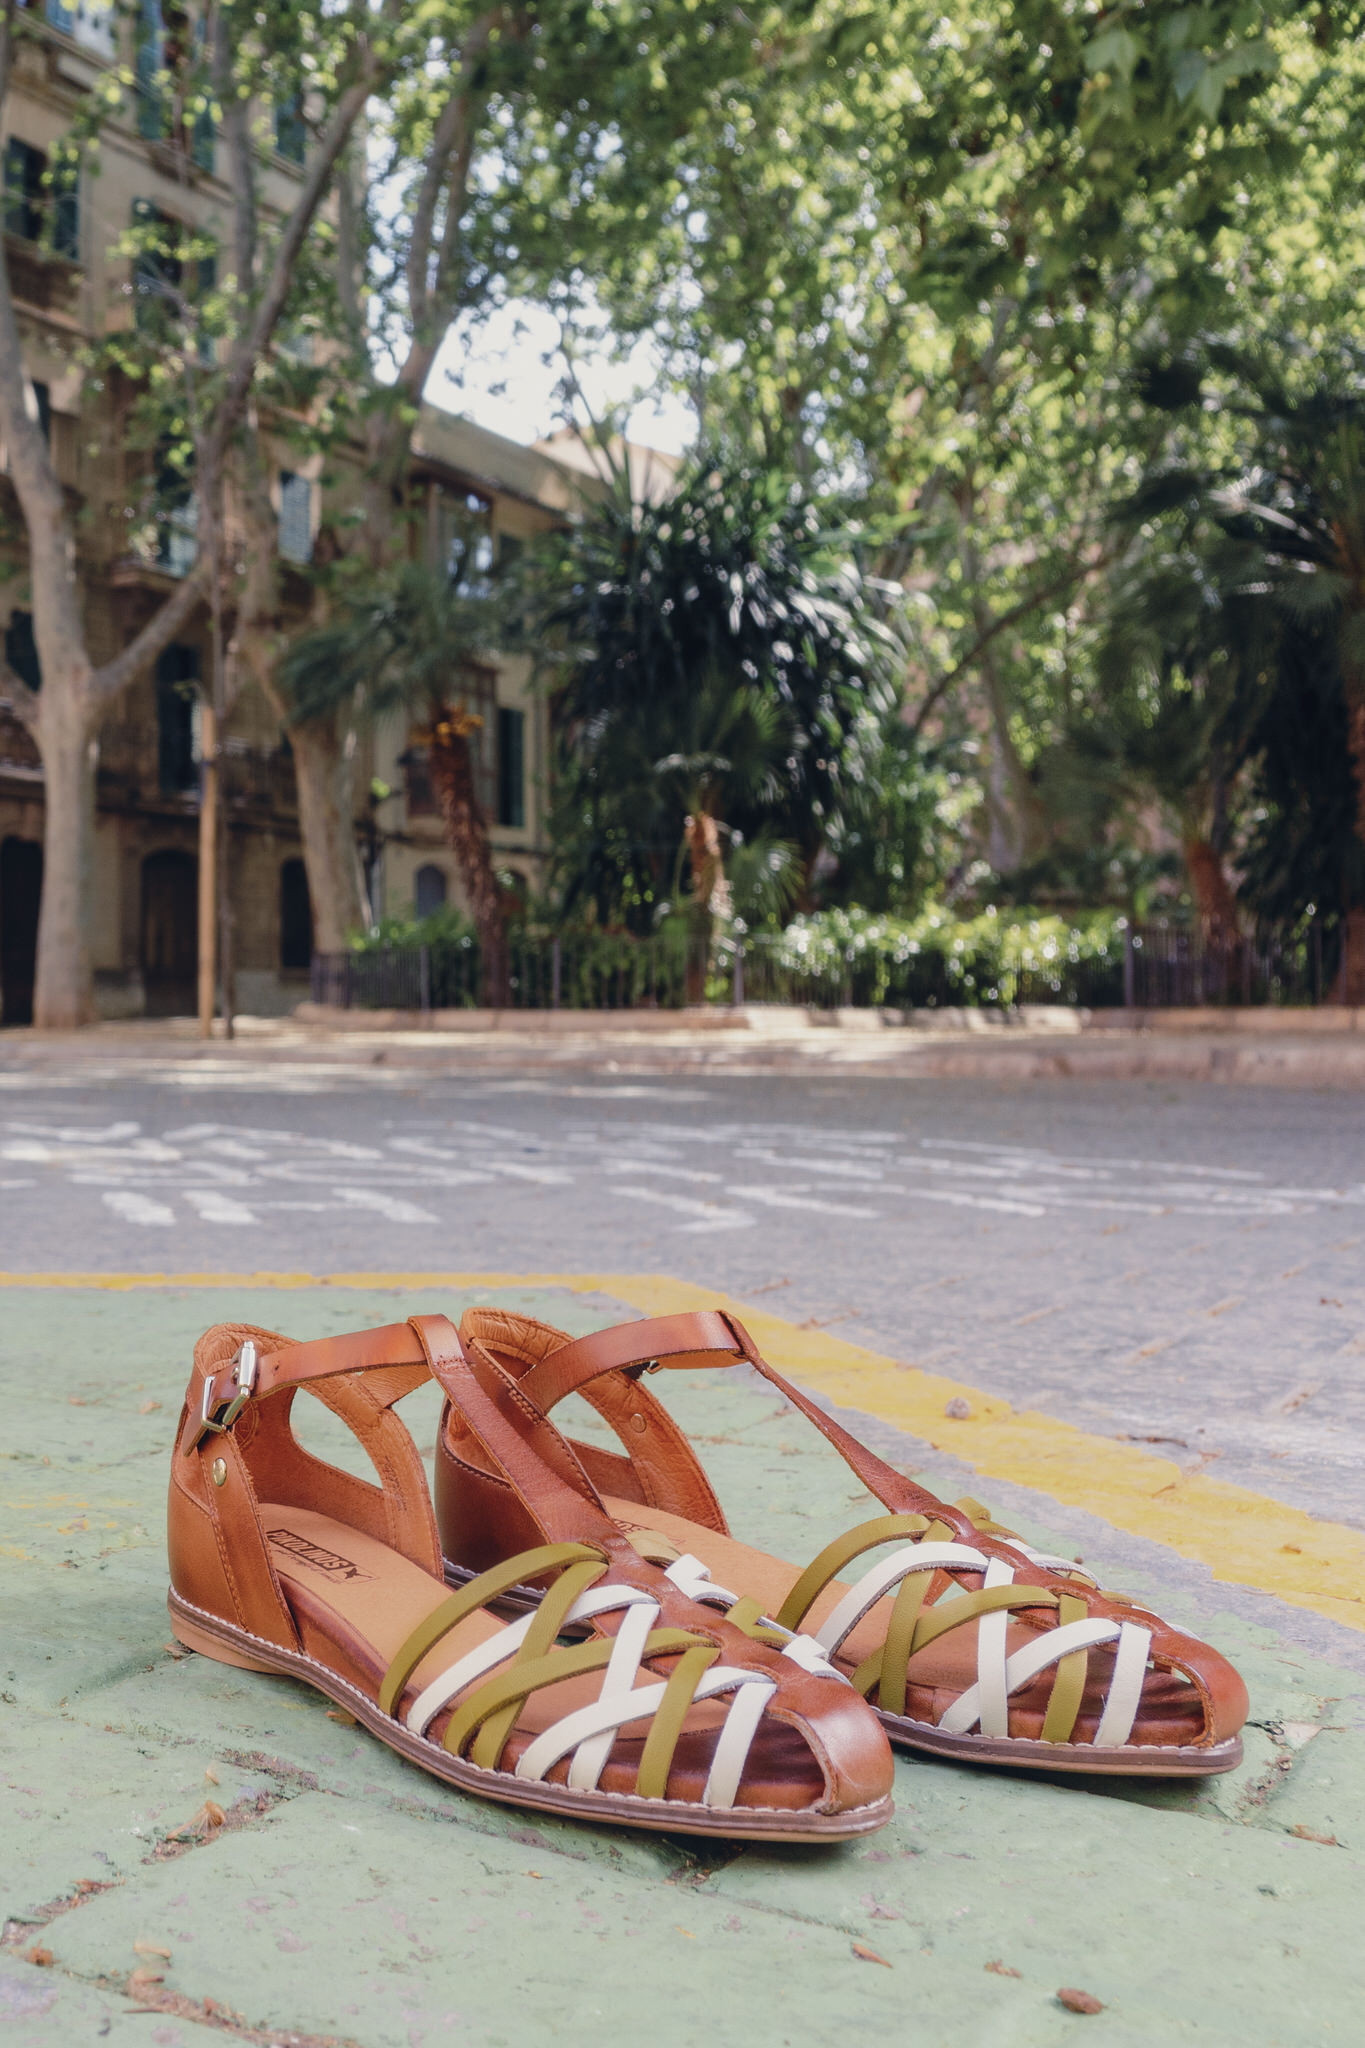 37.	Fotografía de unas sandalias de mujer de Pikolinos en la calle